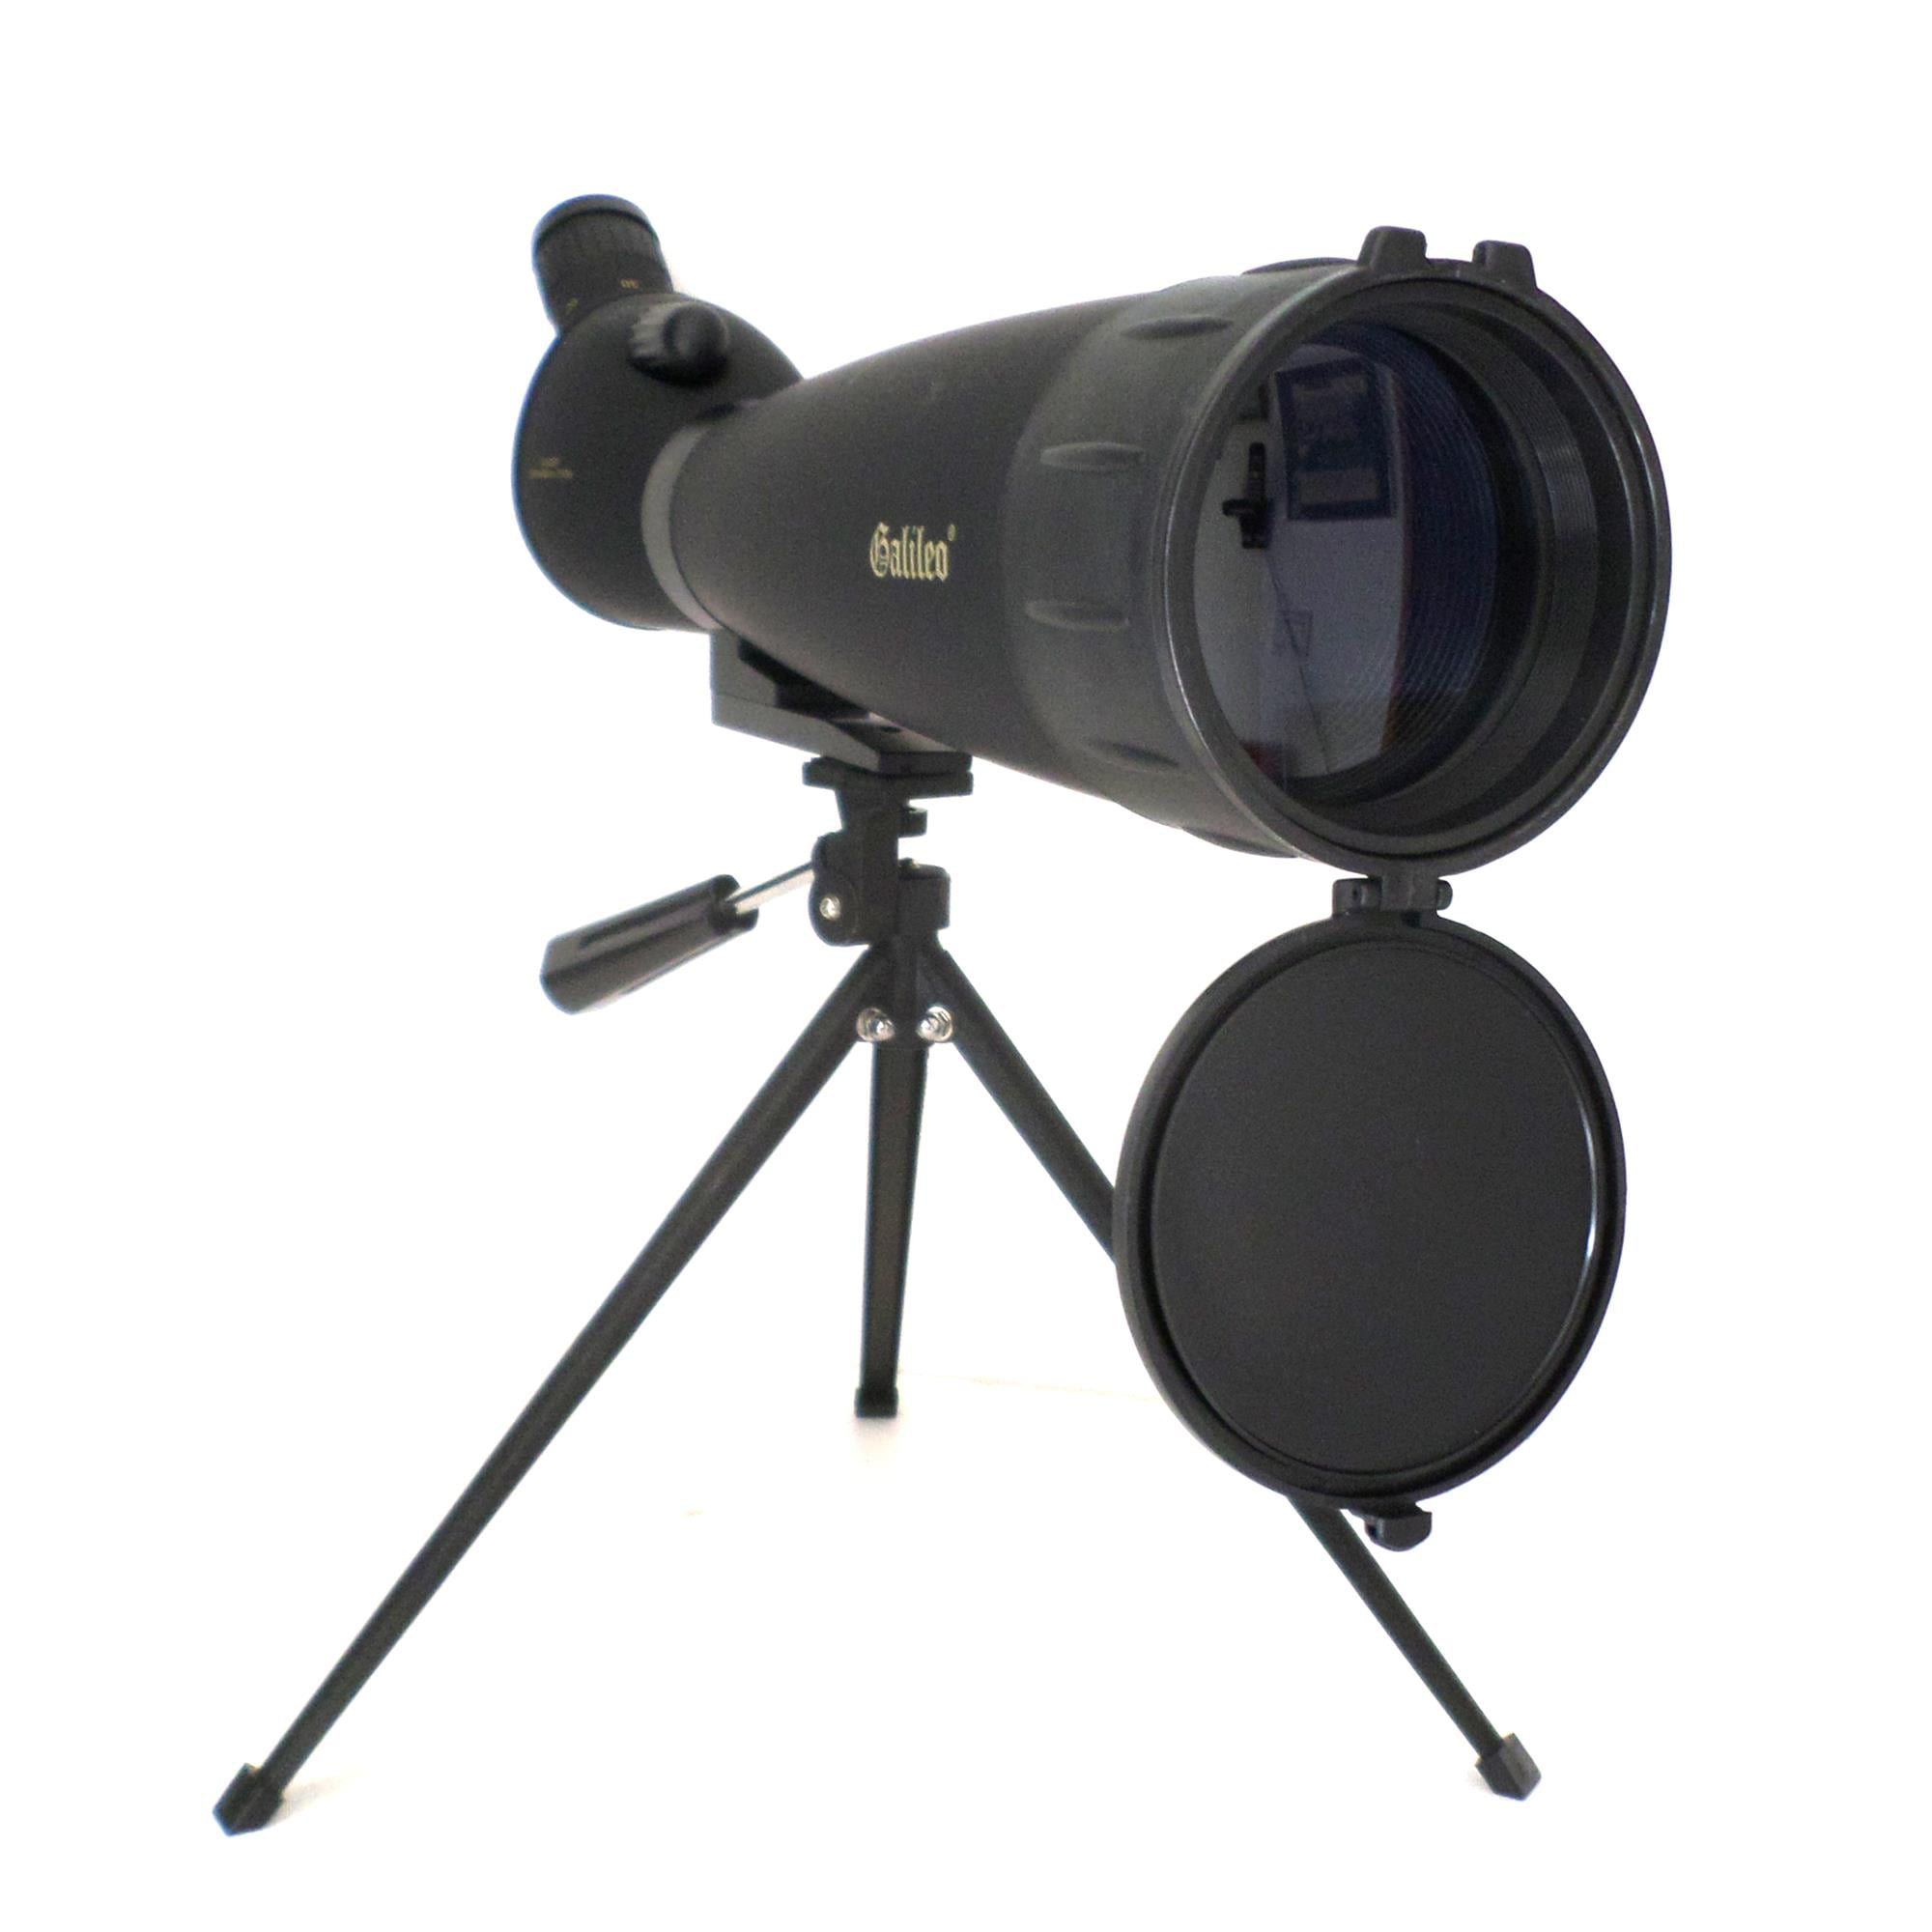 Spectroscope - Pocket size 12x54mm